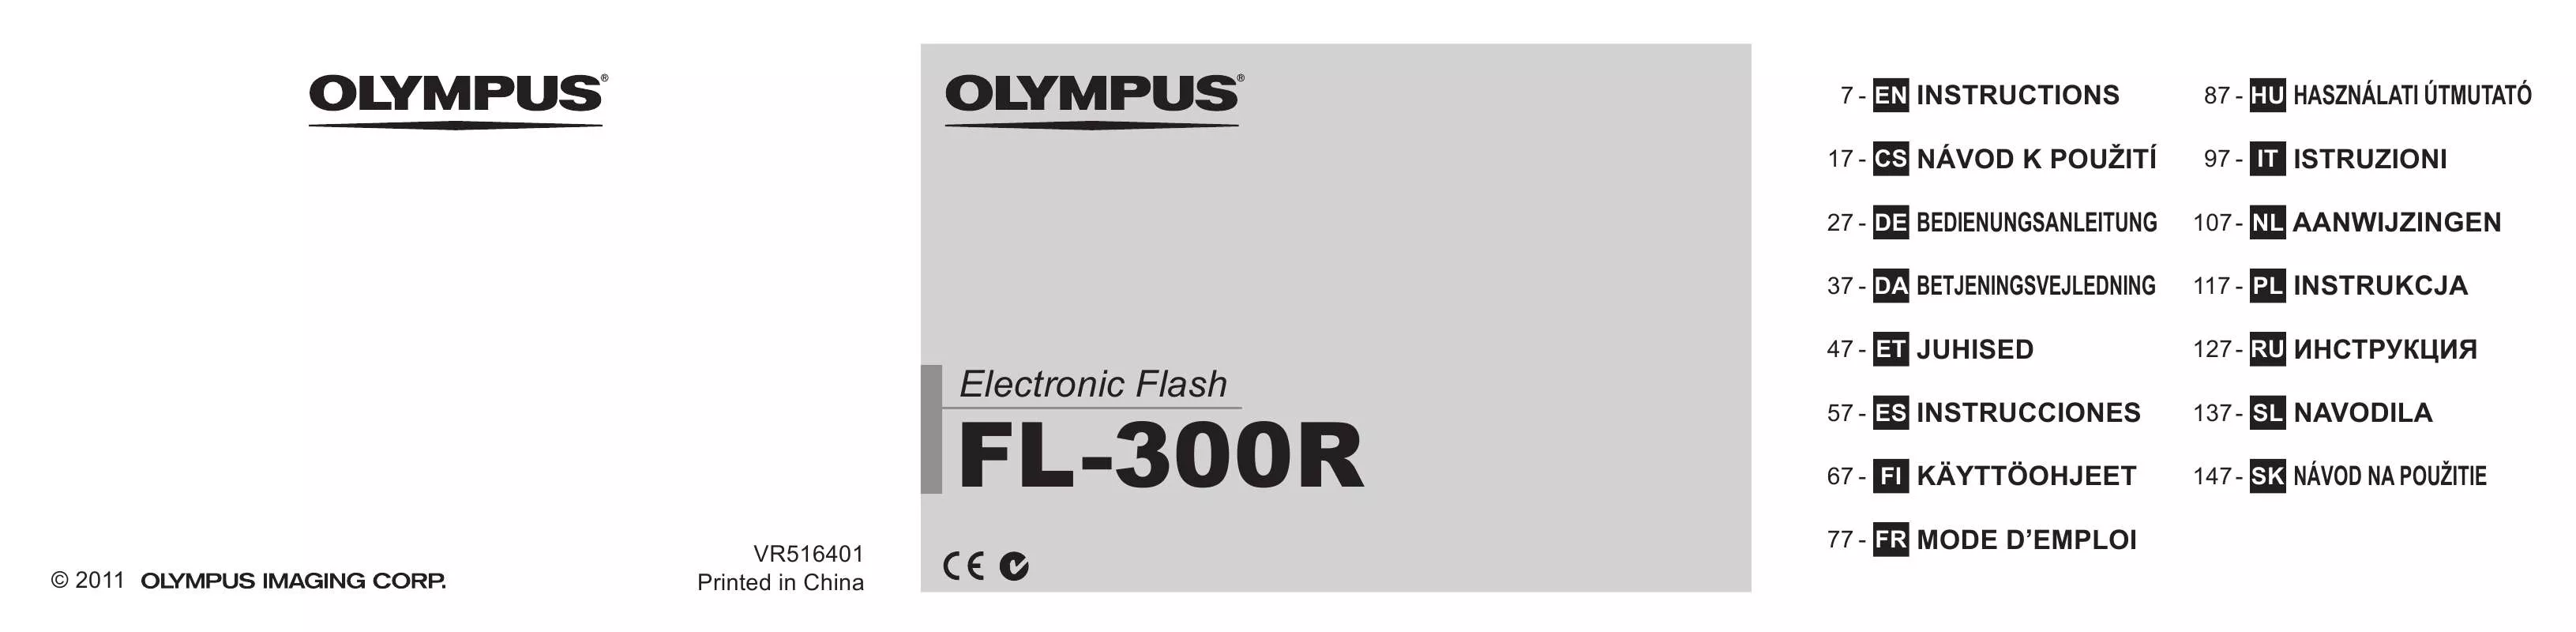 Mode d'emploi OLYMPUS FL-300R